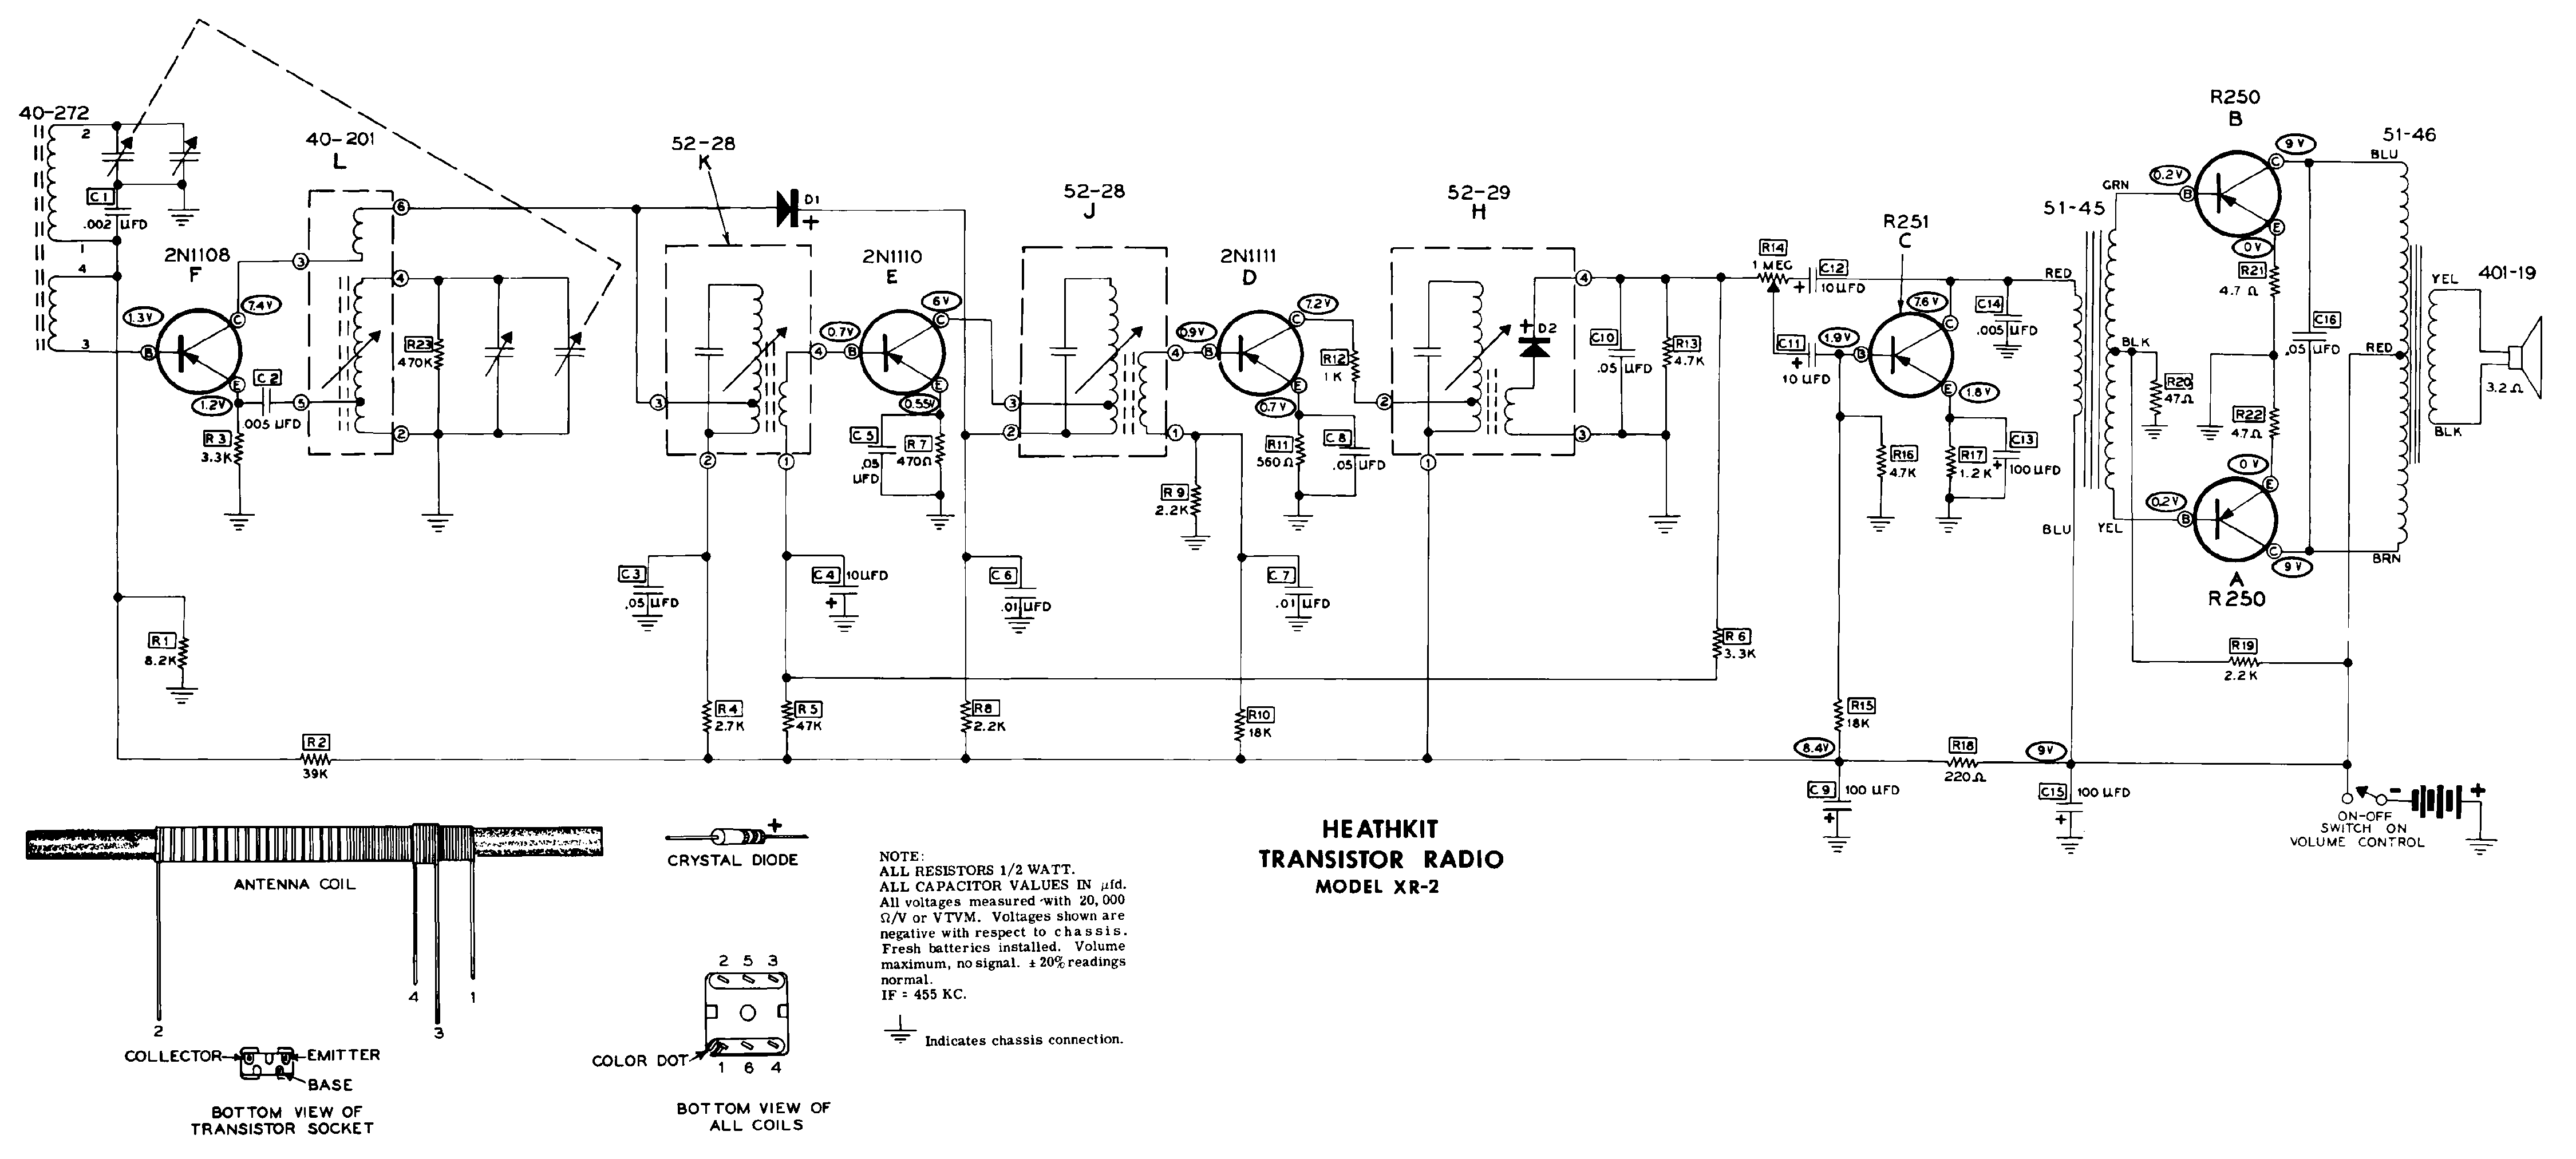 transistor radio repair